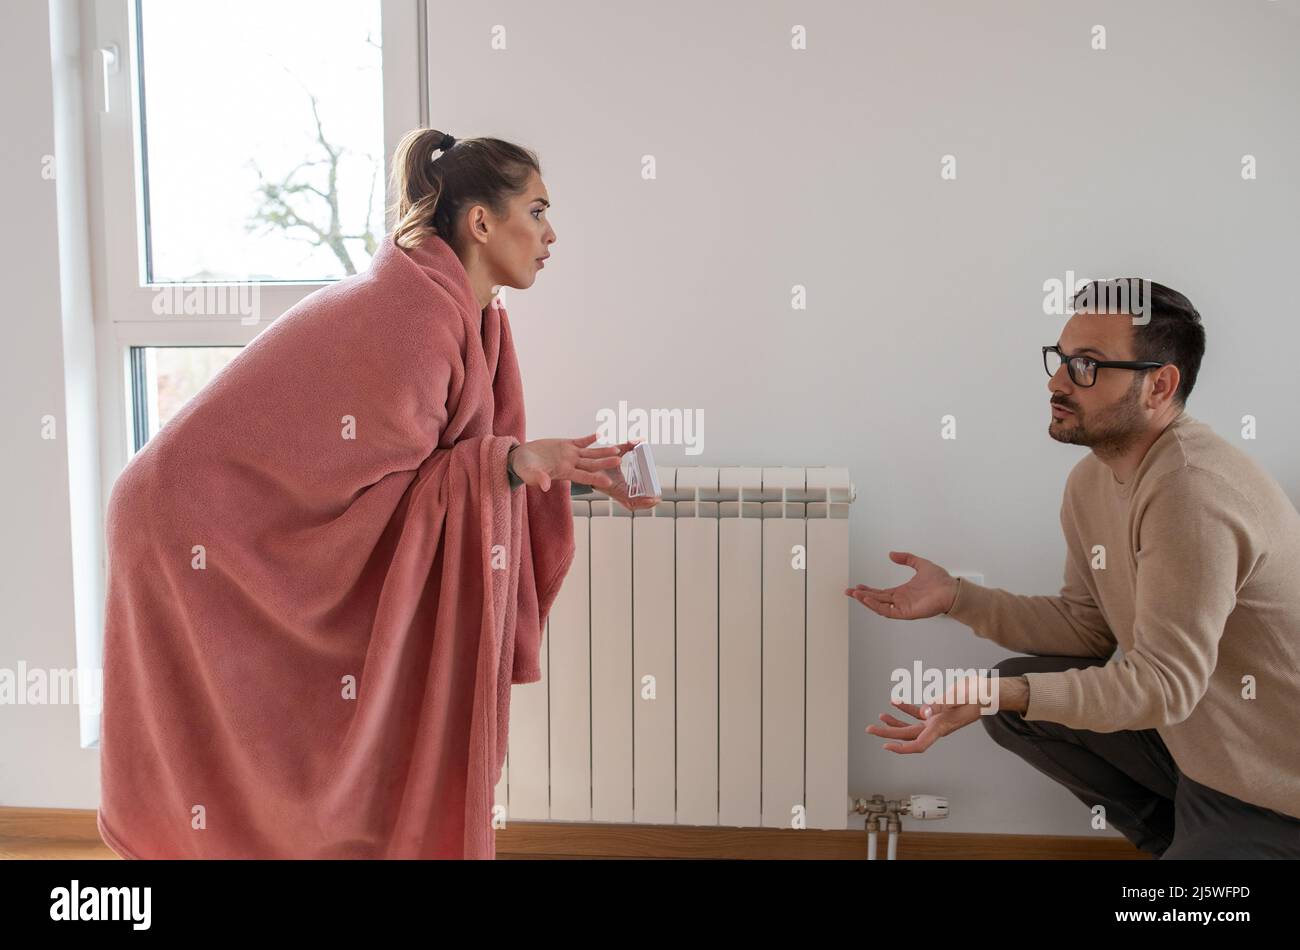 Frau mit einer Decke in der Wohnung bedeckt, die einem Mann eine niedrige Temperatur auf dem Thermostat zeigt. Stockfoto